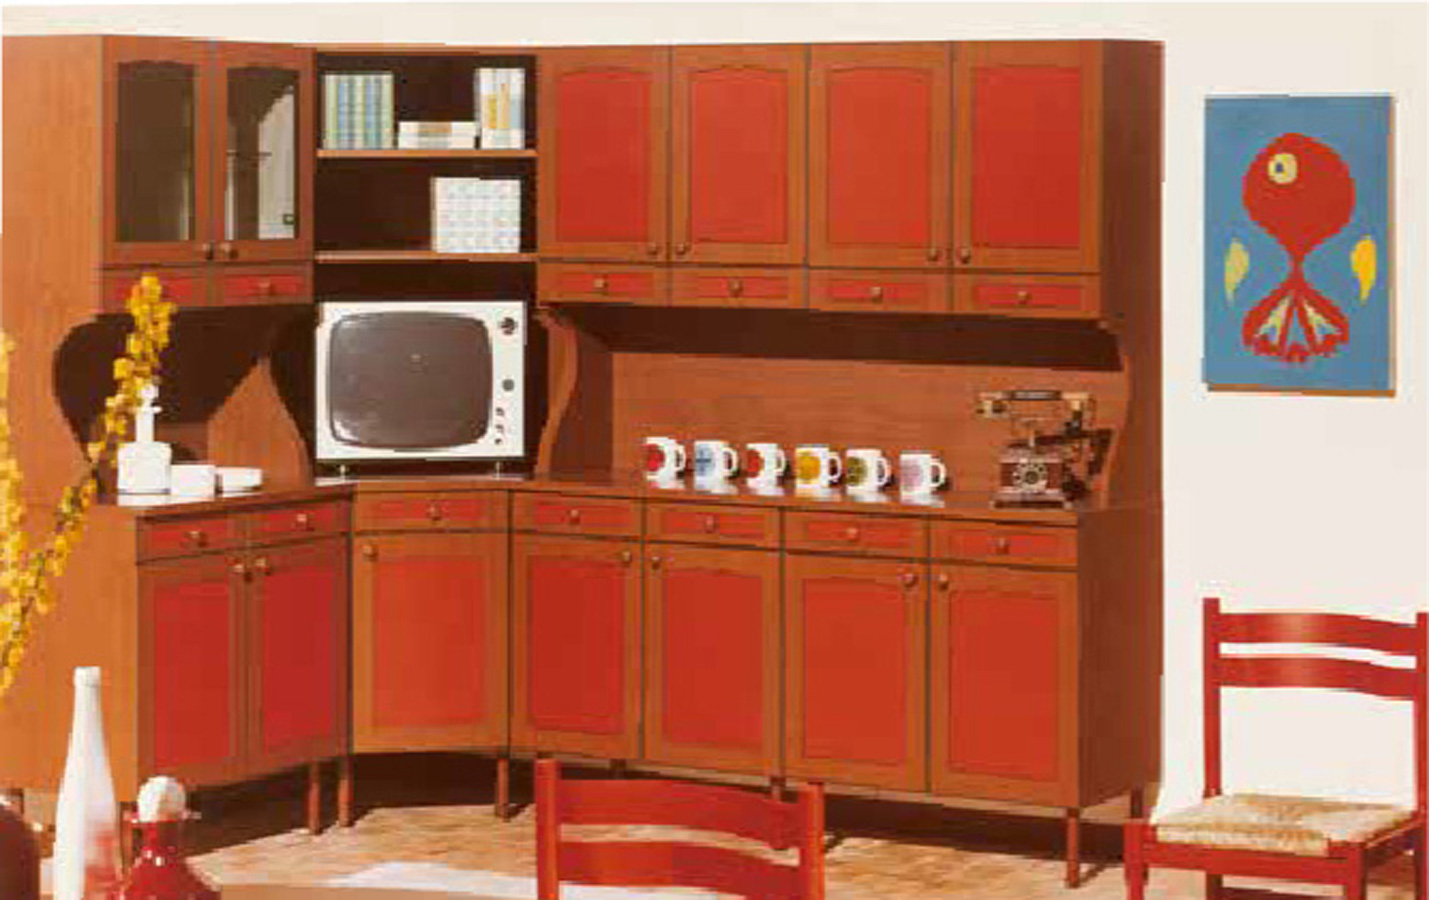 Фото 1 - Модульная кухня итальянской фабрики Cesar с телевизором в угловом модуле